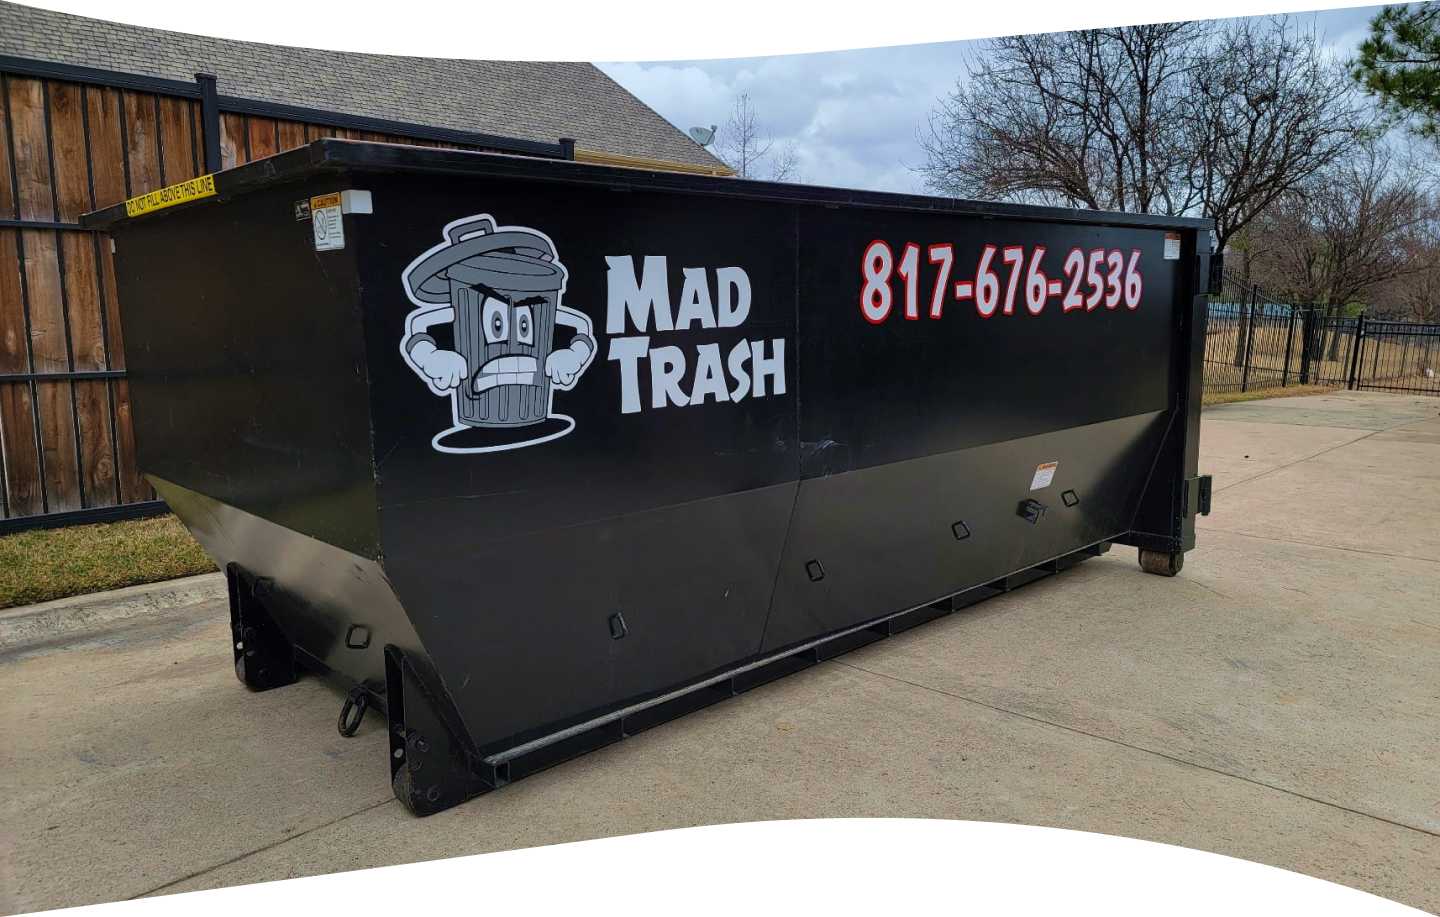 Madtrash Dumpster rental